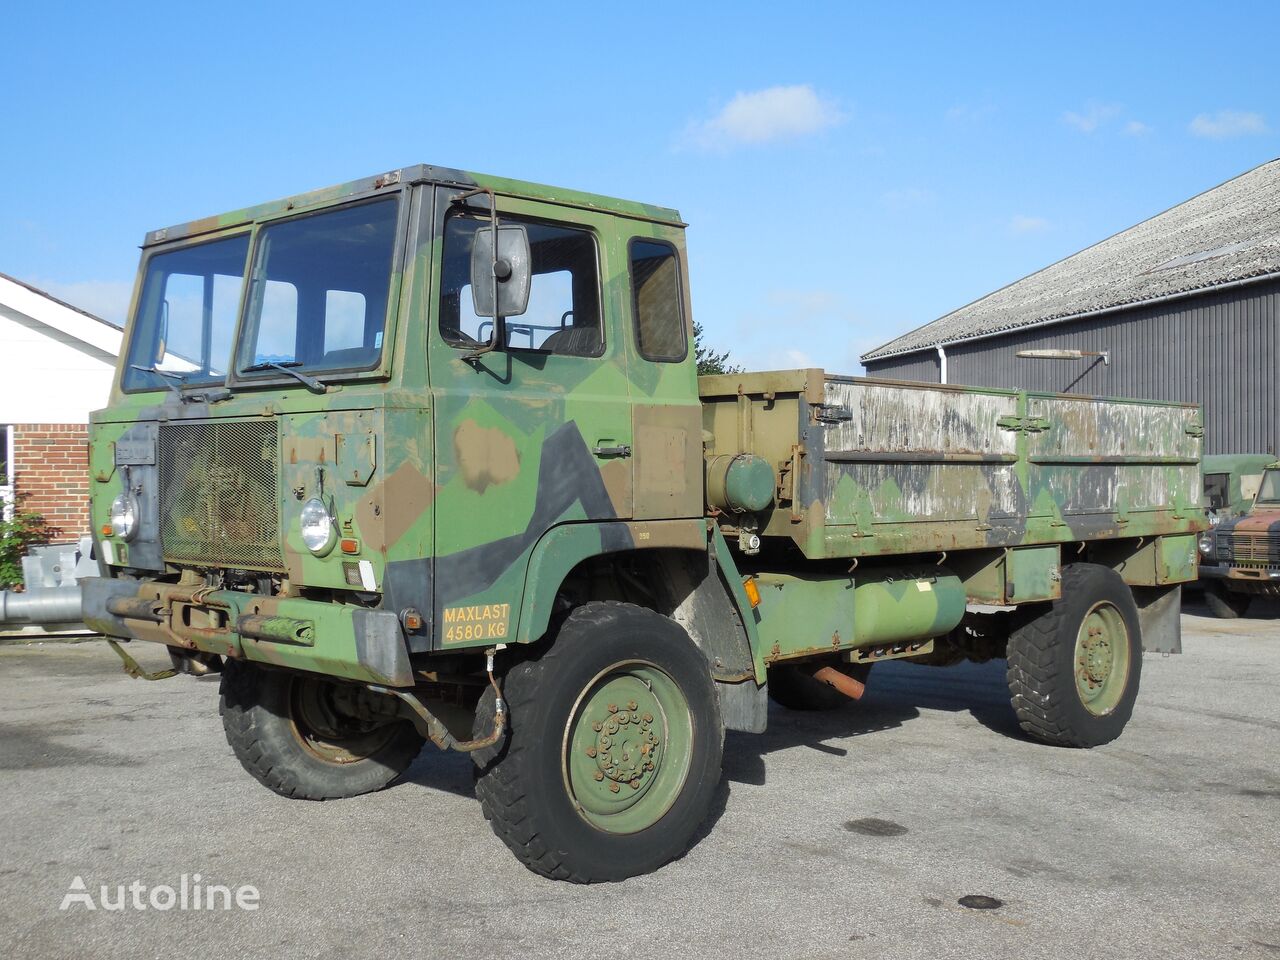 SCANIA TGB30 4x4 military truck